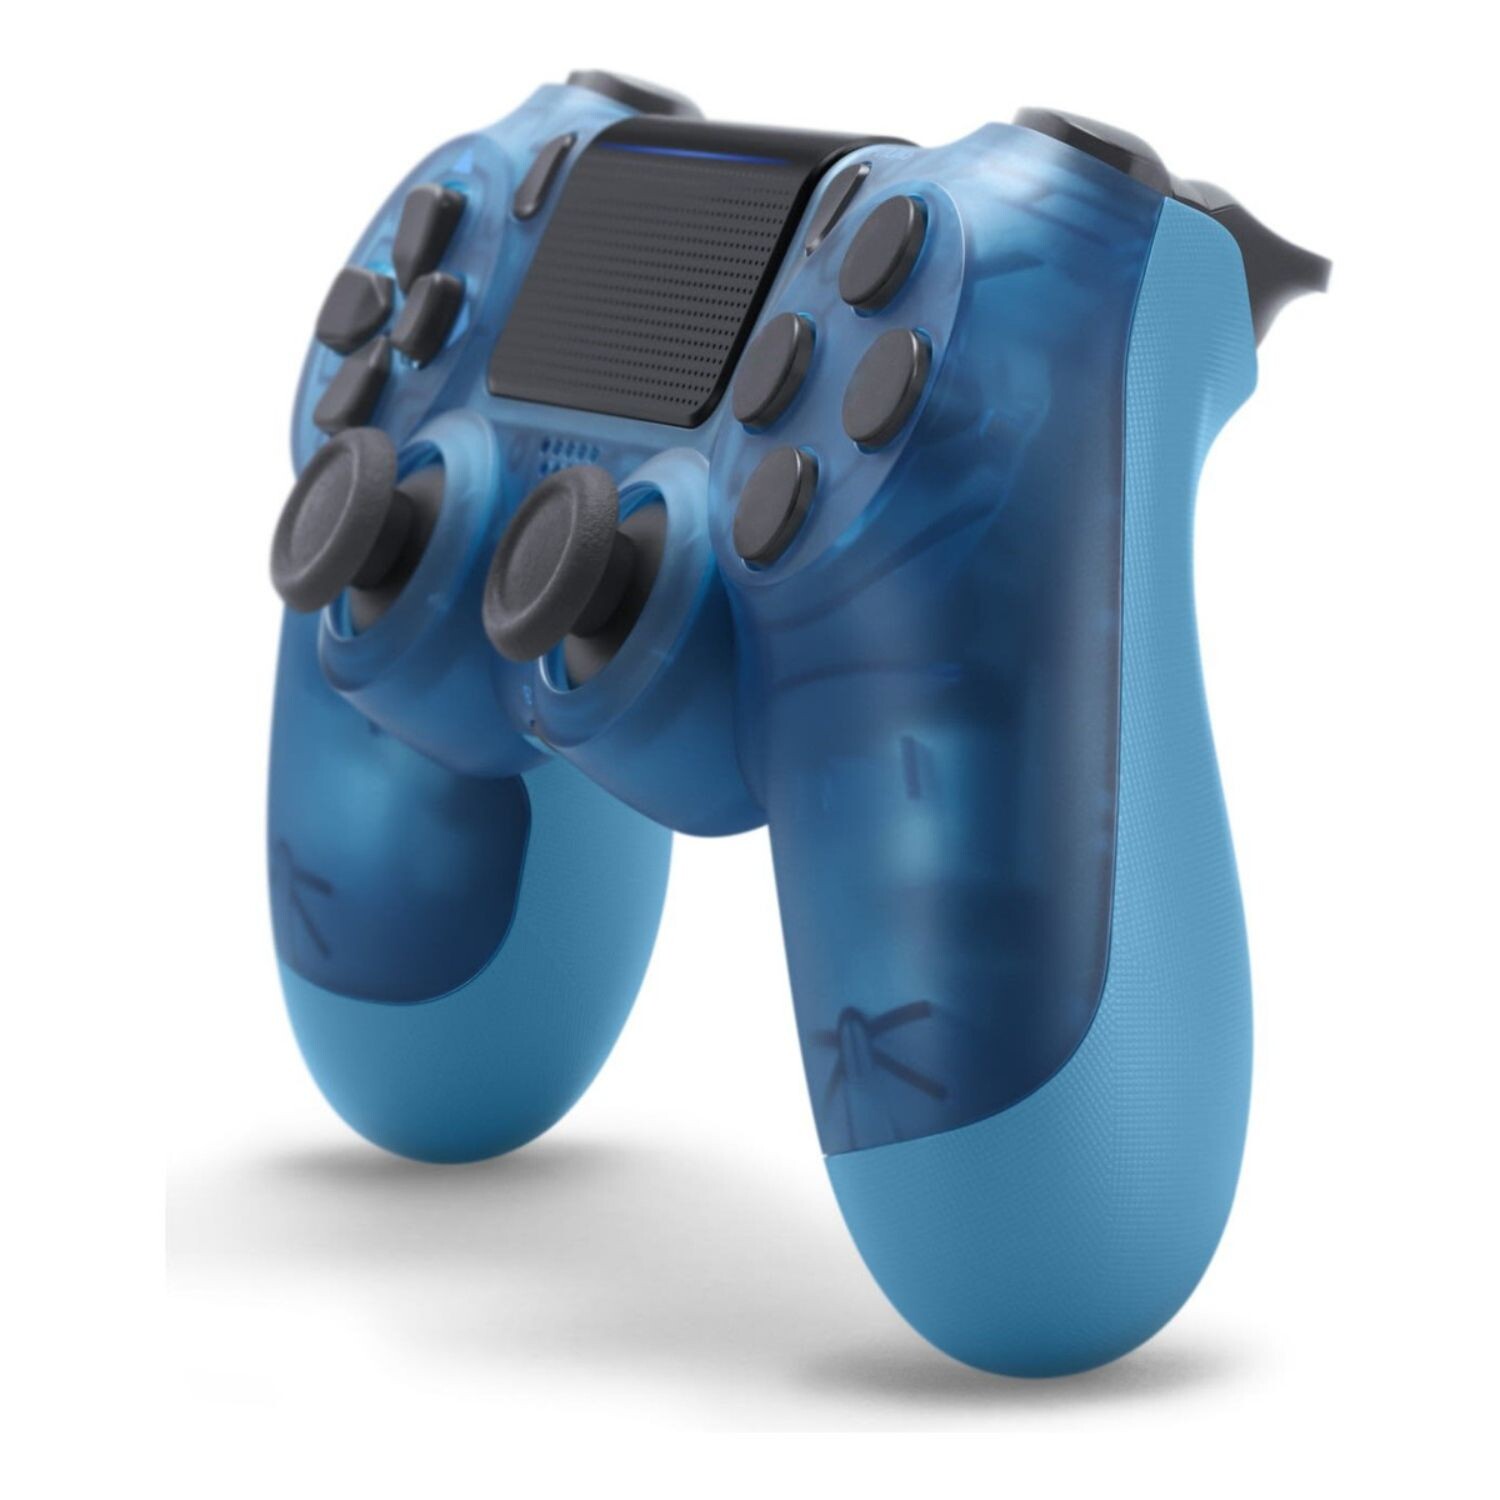 iABC Mando inalámbrico PS4 V2 para PlayStation 4 – Azul Baya – iABC SSD